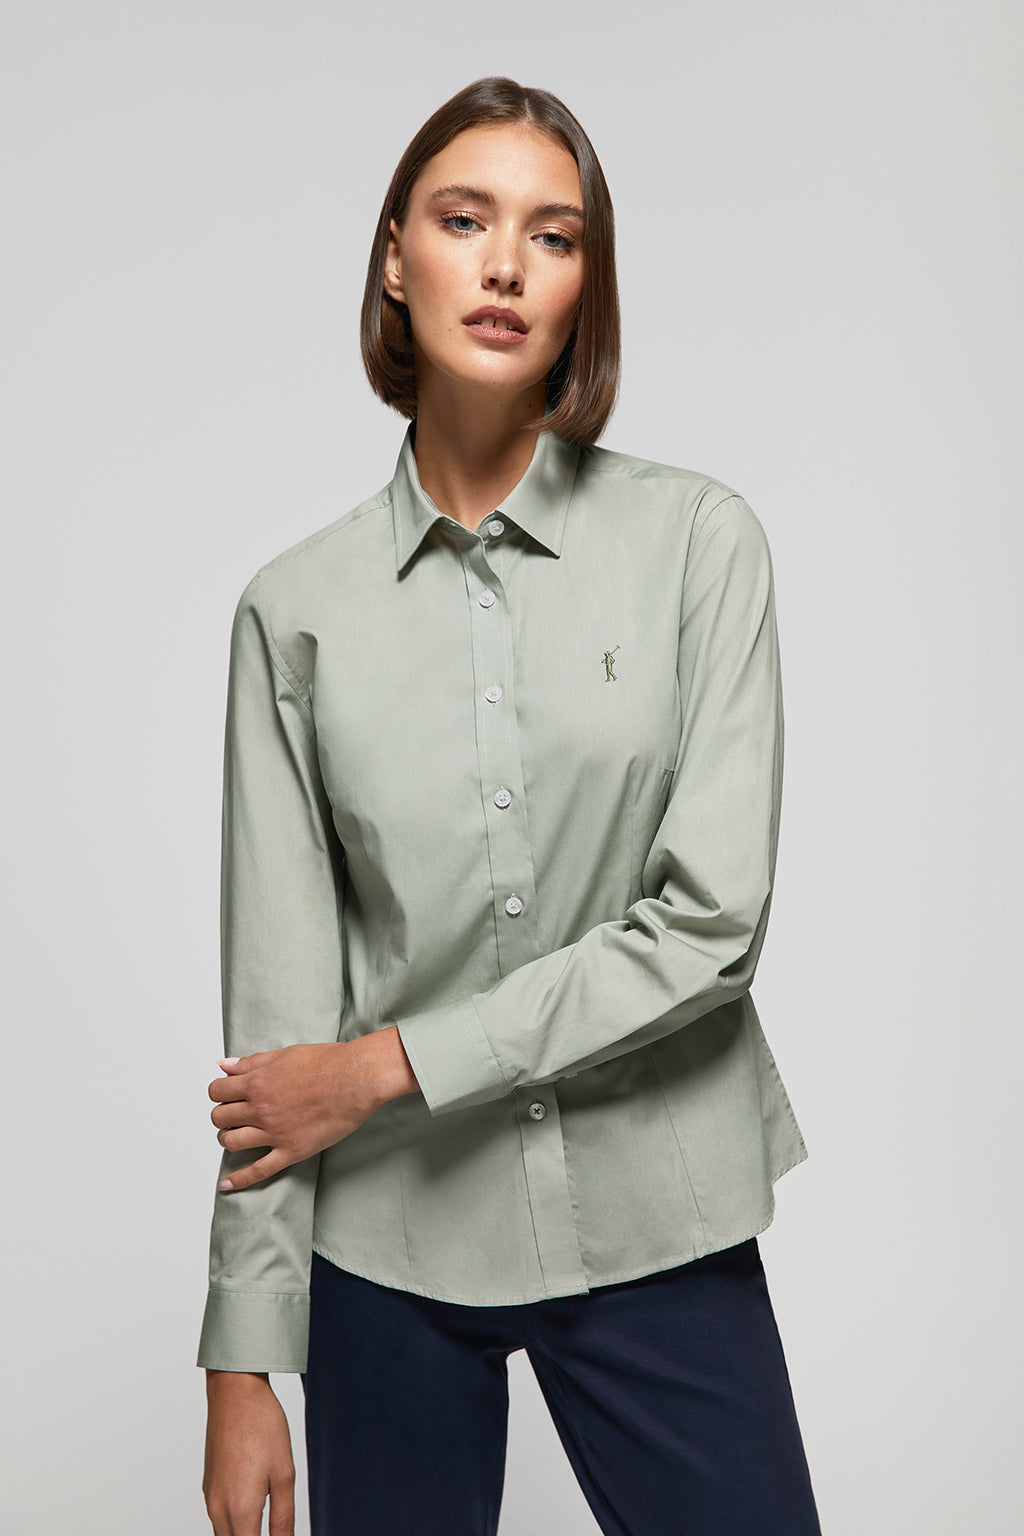 Camisa entallada verde claro popelín con bordado – Polo Club